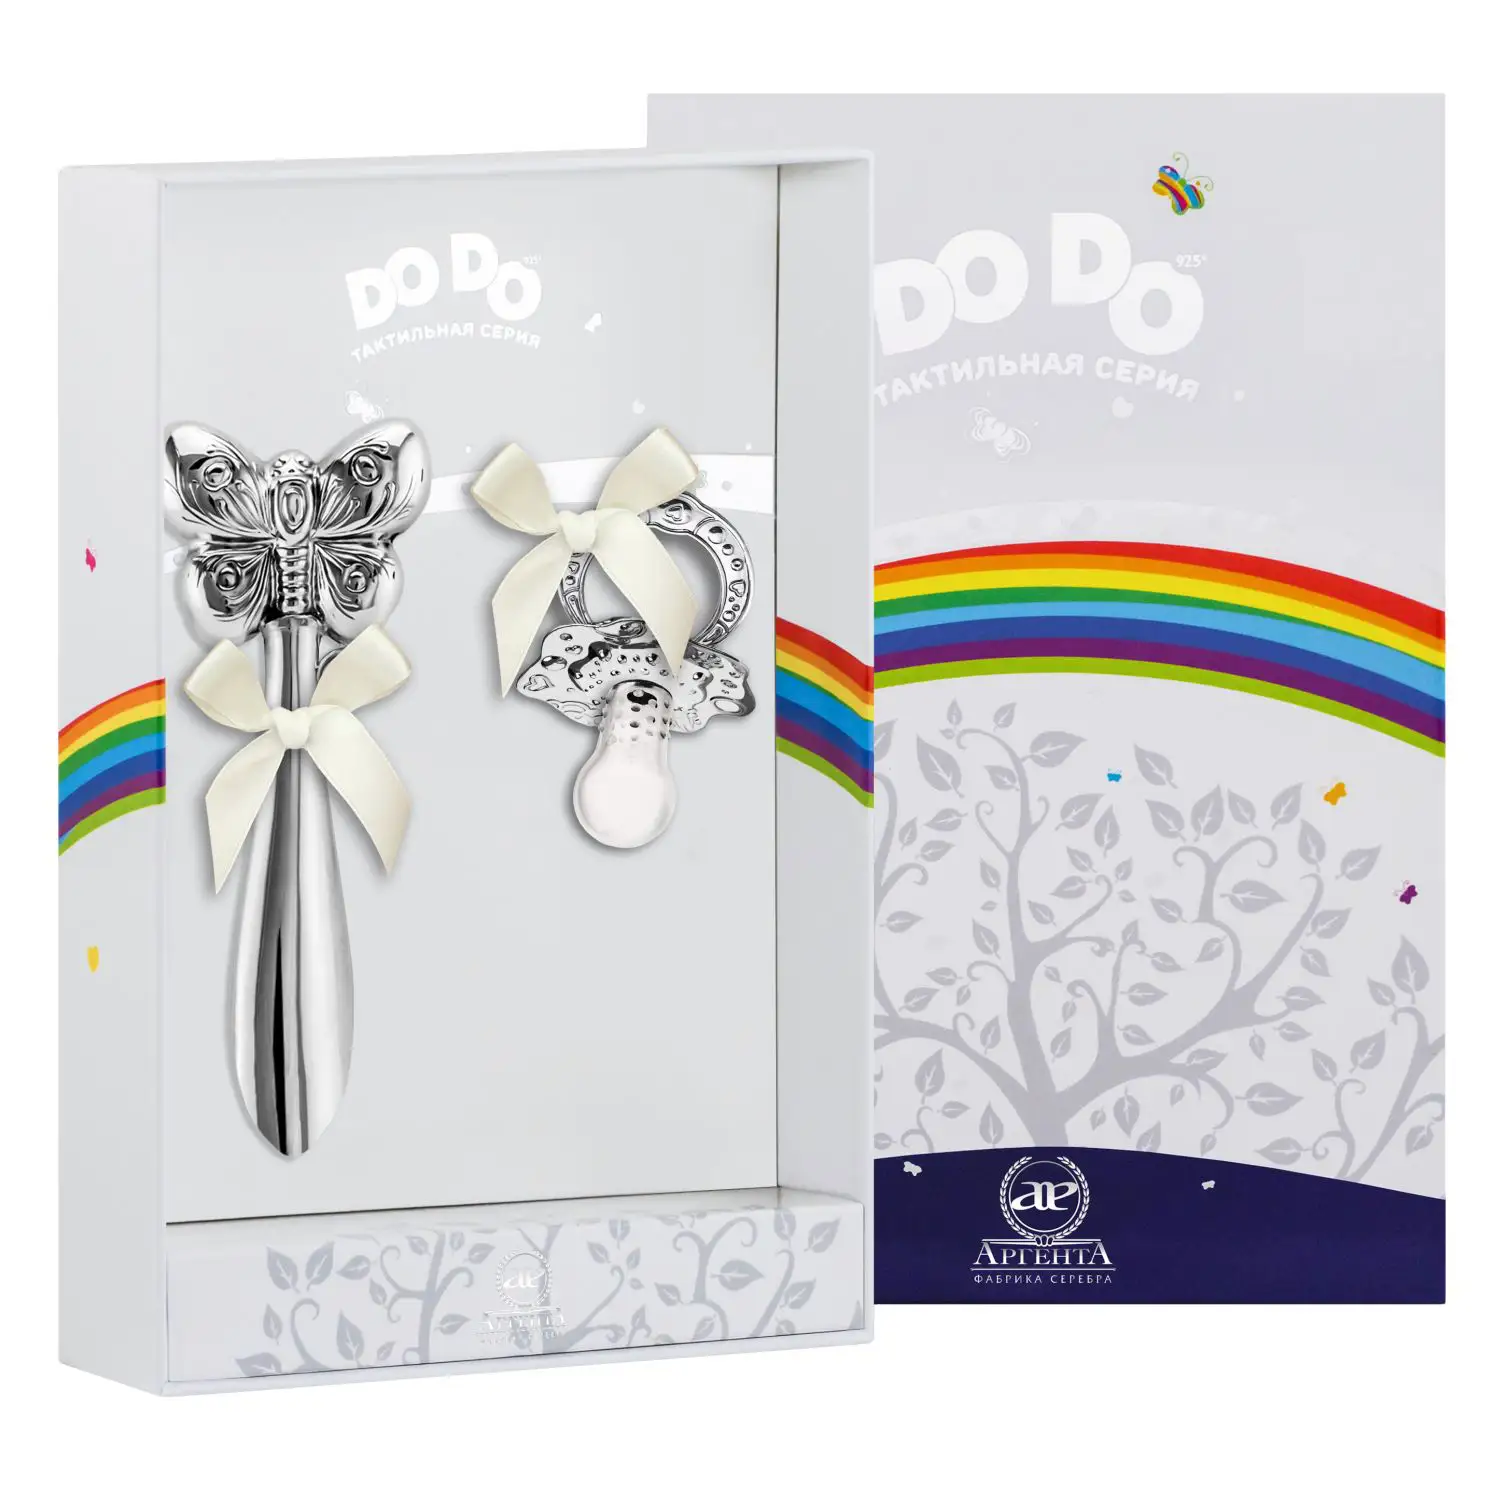 Набор для малышей DODO Бабочка: погремушка и сувенир-пустышка (Серебро 925) набор для малышей dodo ангел погремушка и сувенир пустышка серебро 925